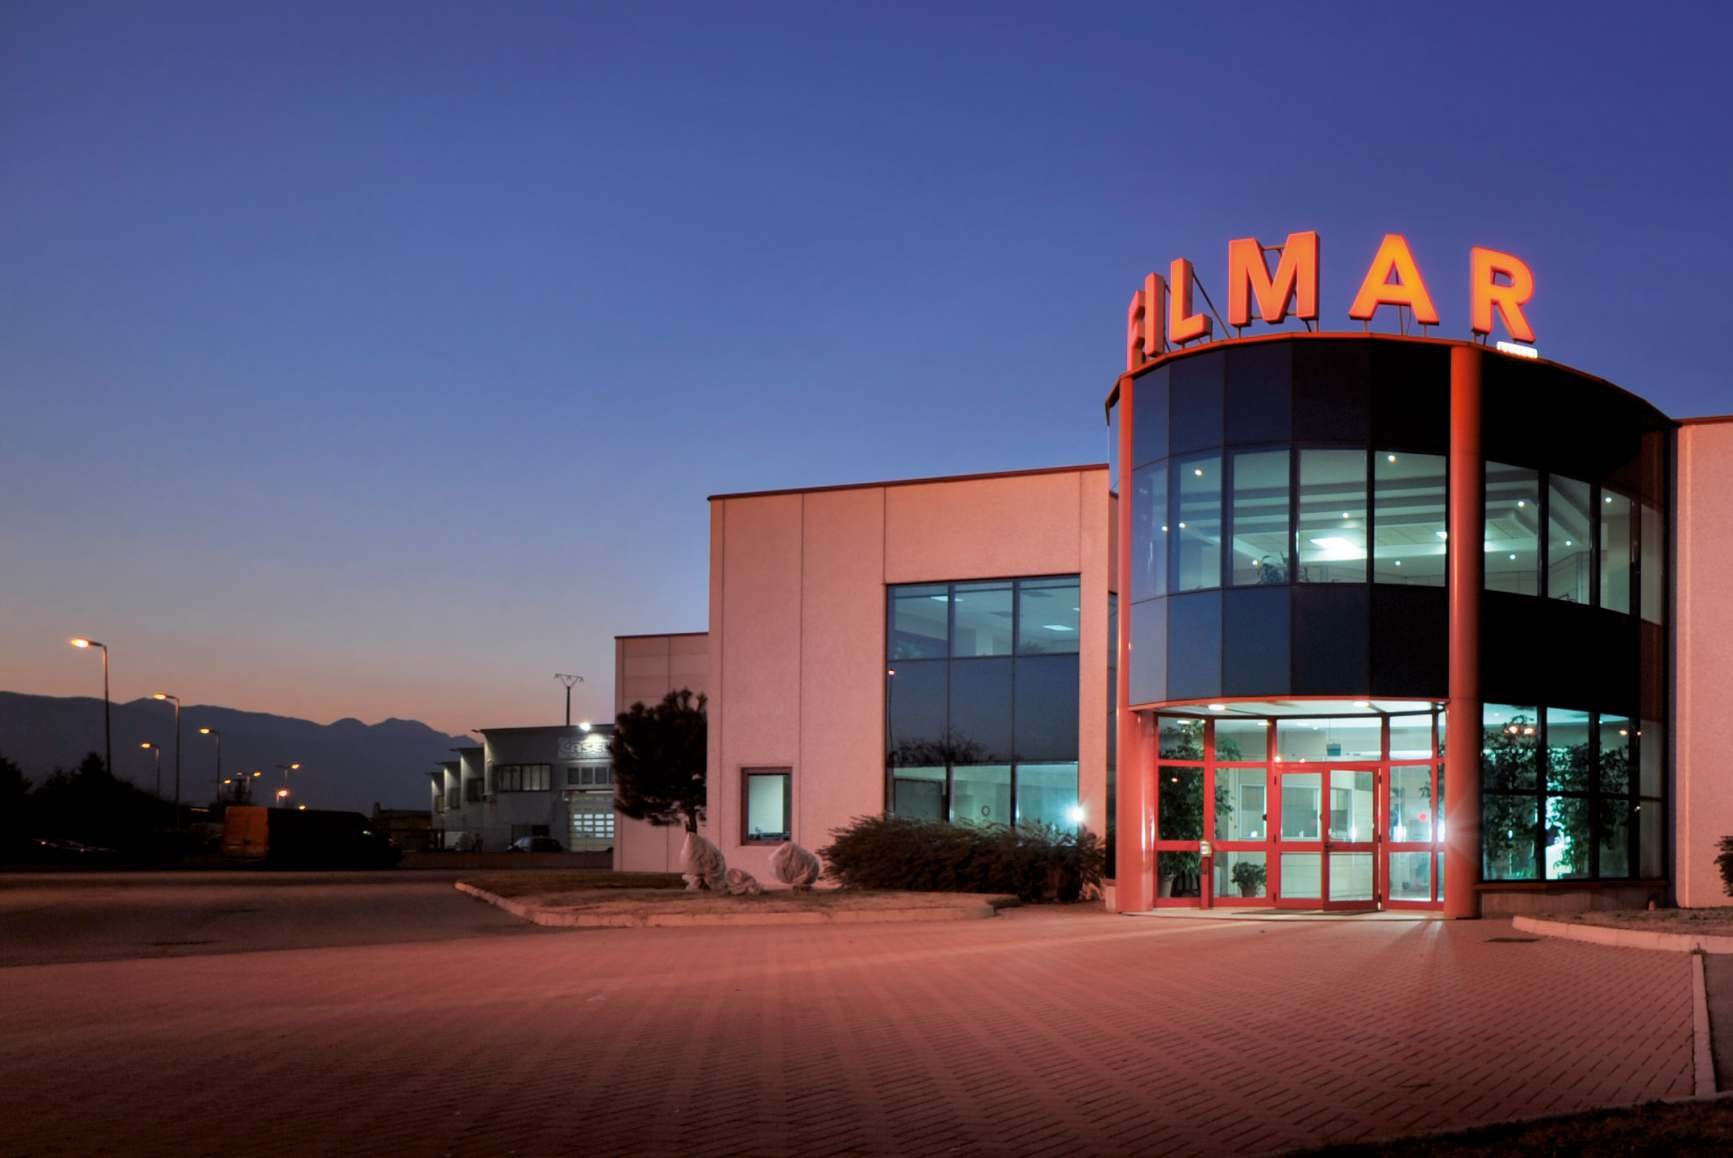 IL GRUPPO MARTINETTO Con una capacità produttiva di oltre 100 milioni di metri all anno, Filmar è tra le maggiori manifatture di nastri in tessuto a livello europeo.